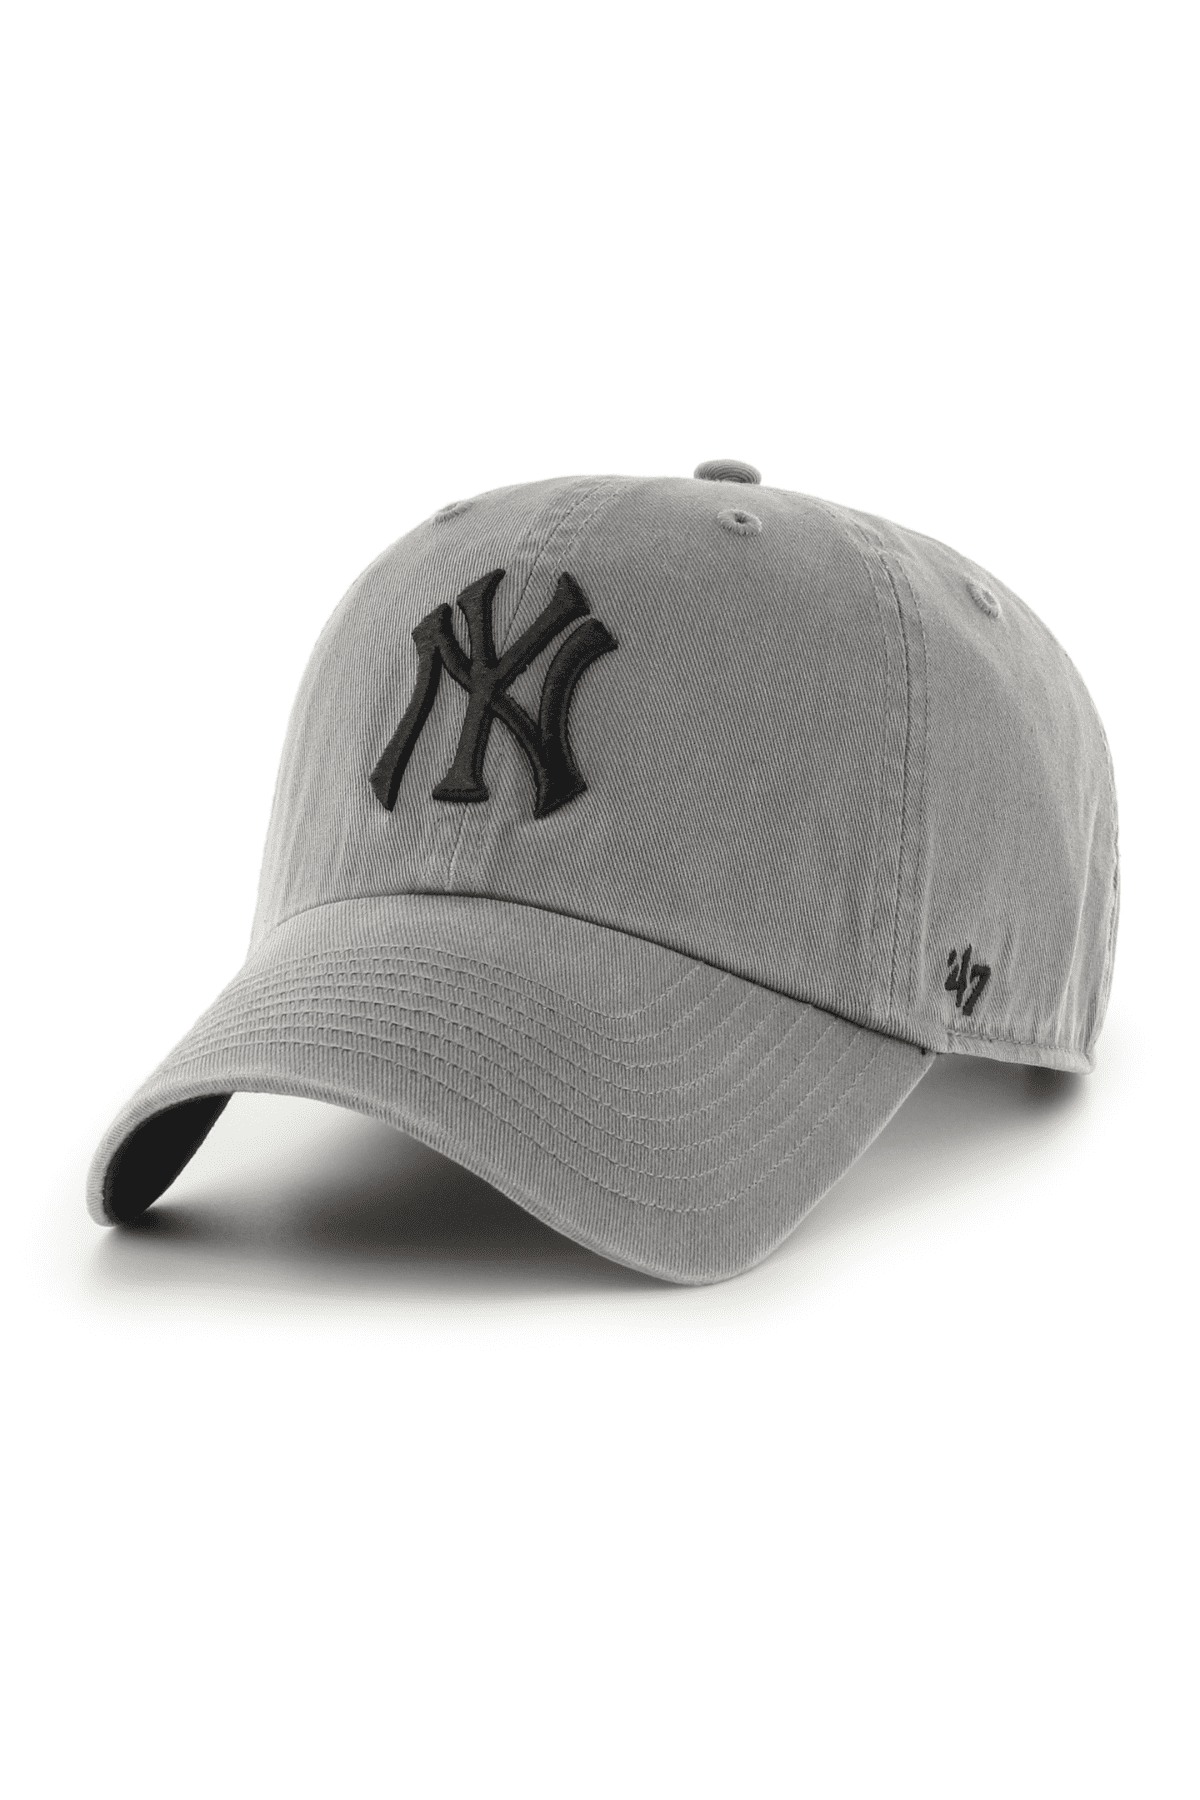 כובע מצחייה - 47 MVP NY עם הדפס New York Yankees אפור-47-One size-נאקו